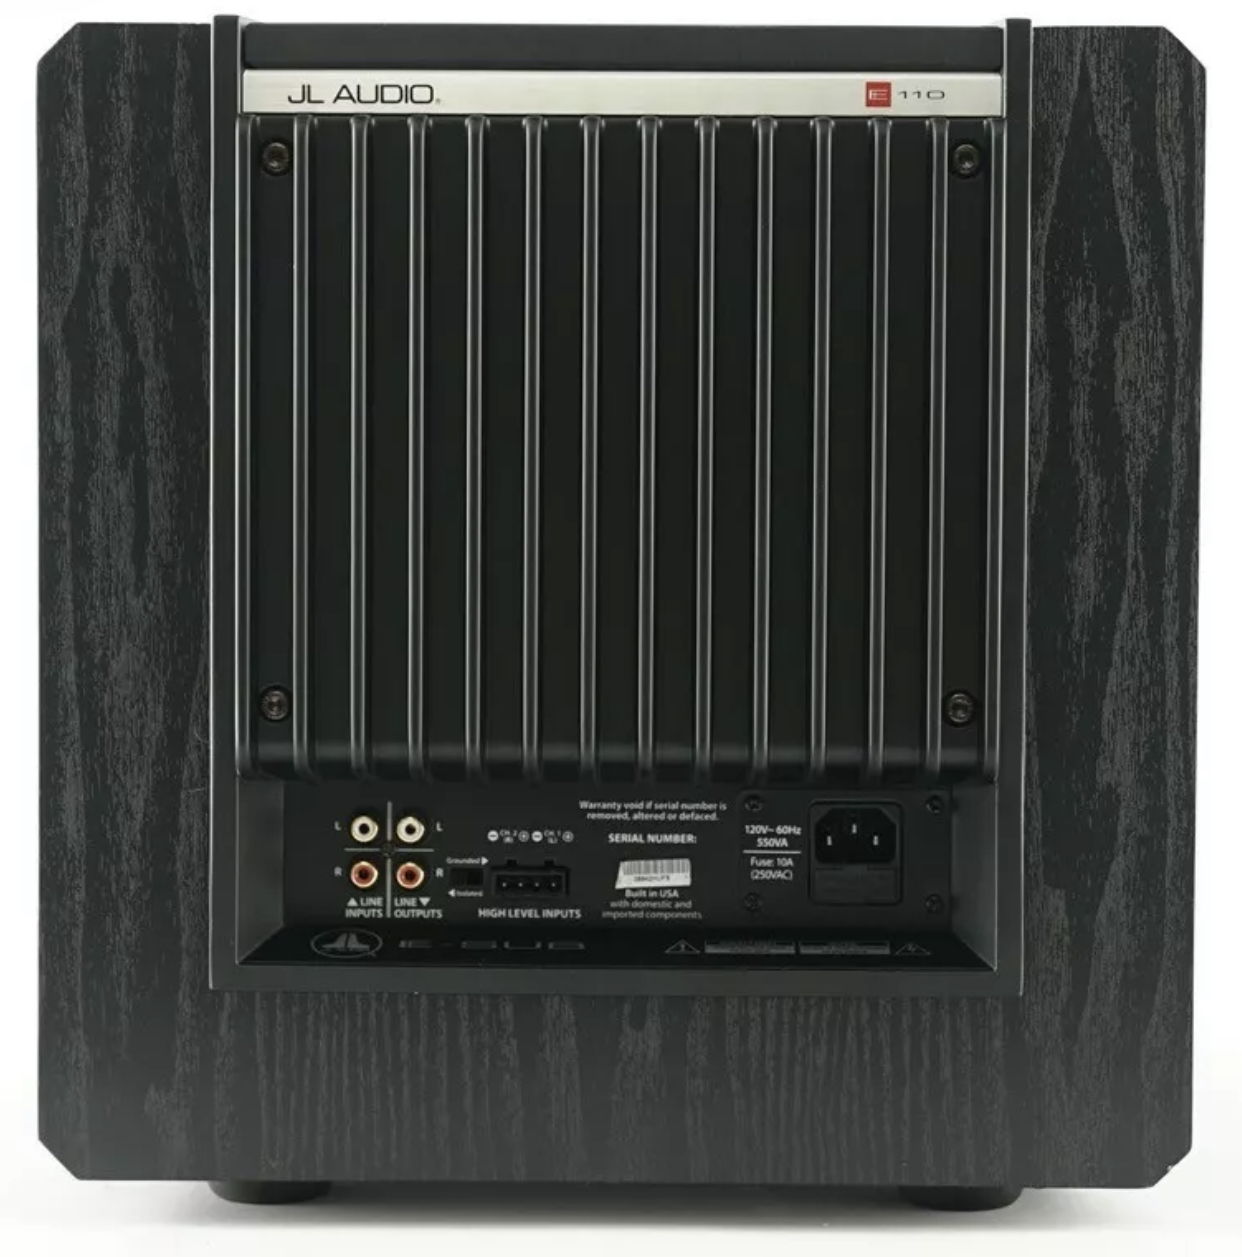 JL Audio E110 Black Ash New 'Open Boxes" set available. 2